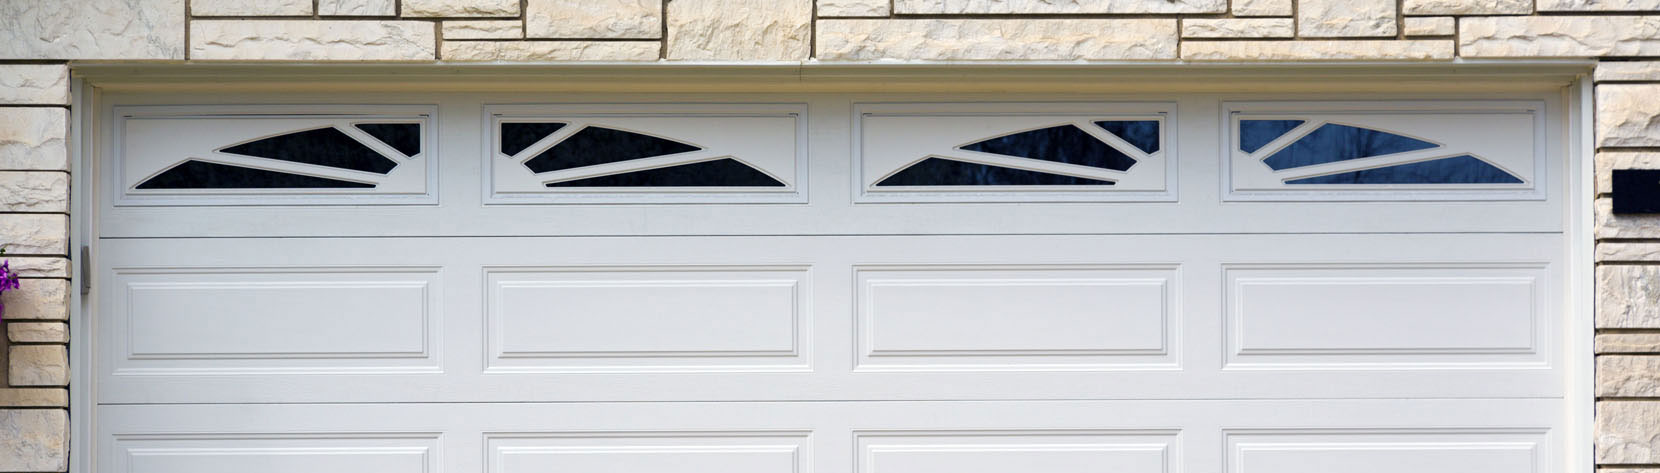 How To Fix Uneven Garage Door, Fix Unbalanced Garage Door